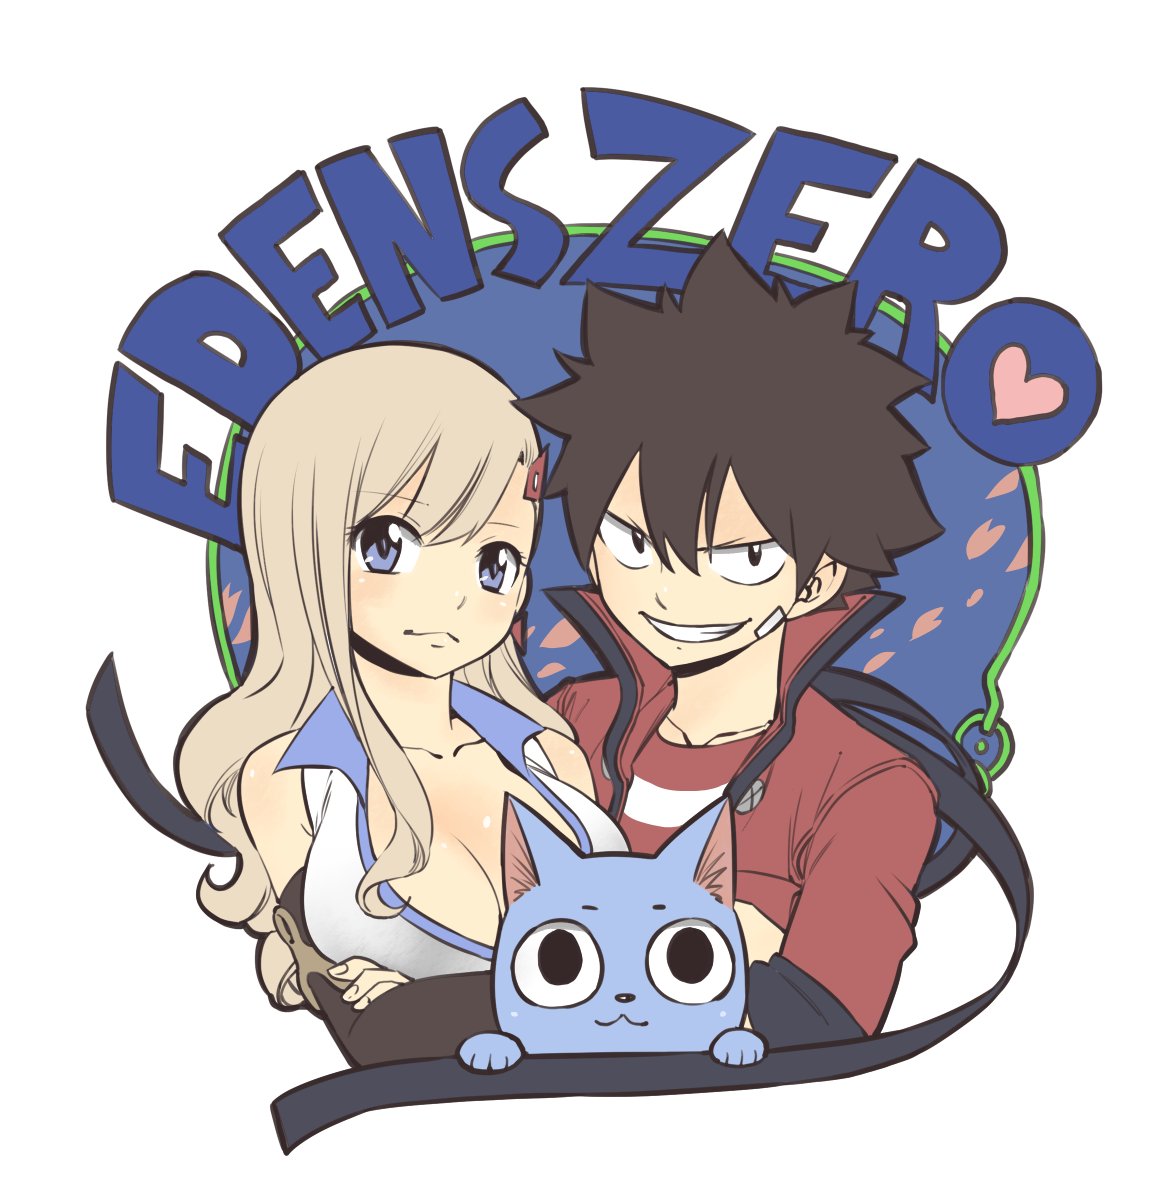  Eden's Zero: Novo mangá do autor de Fairy